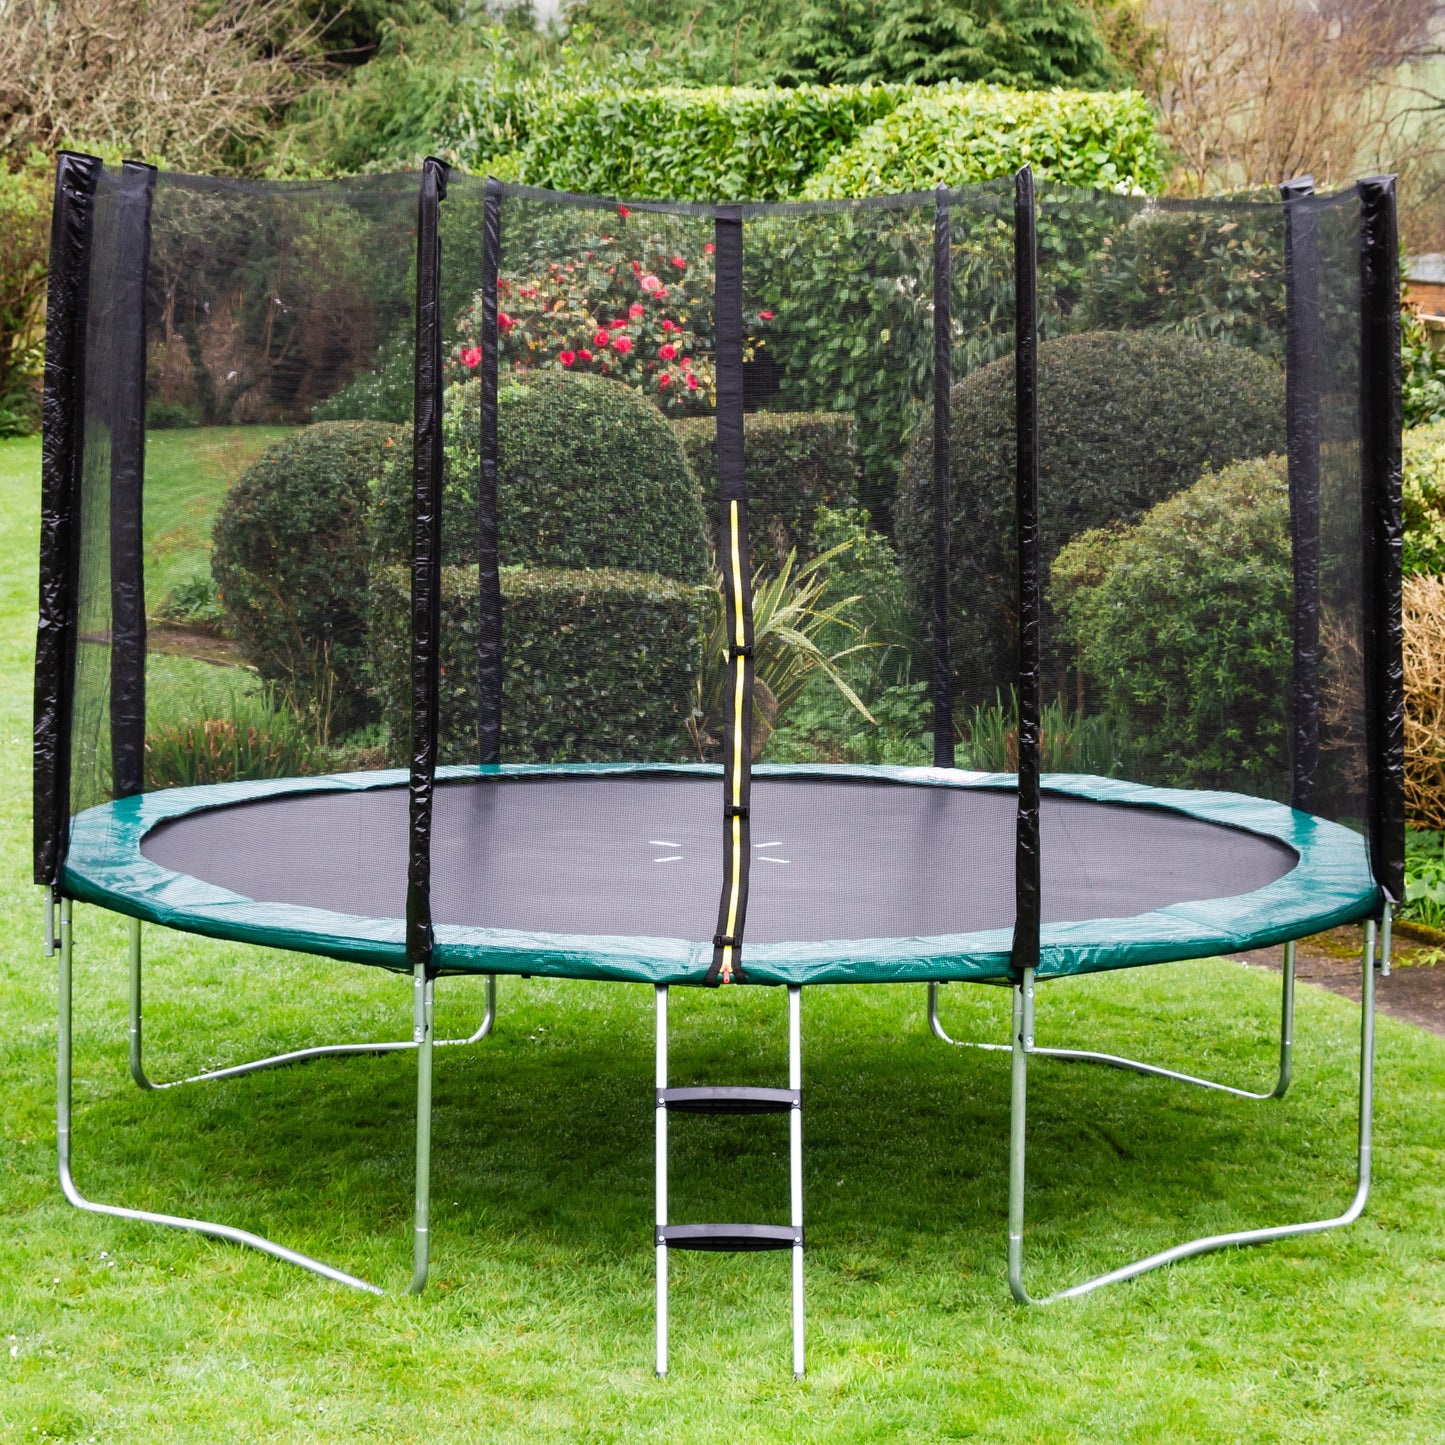 Kanga 14ft trampoline package